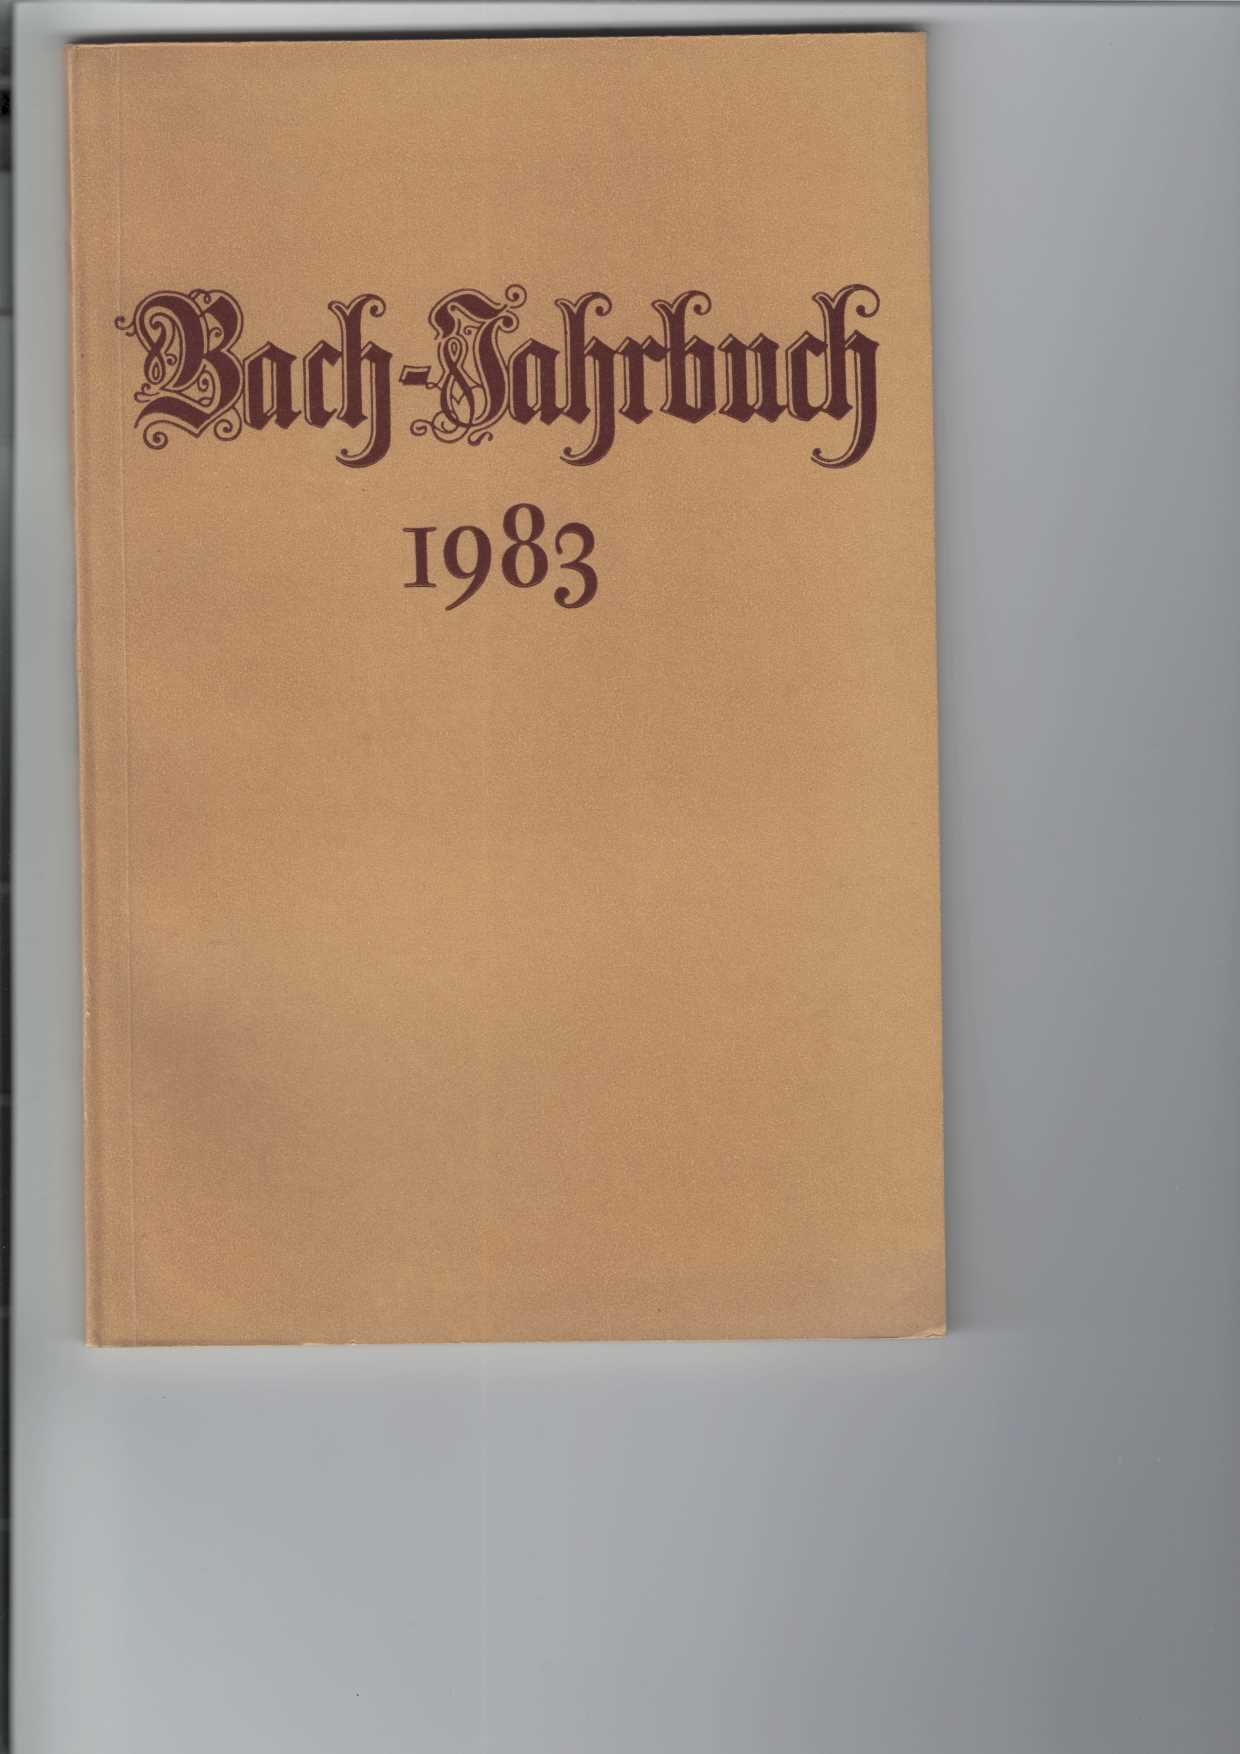   Bach-Jahrbuch 1983. 